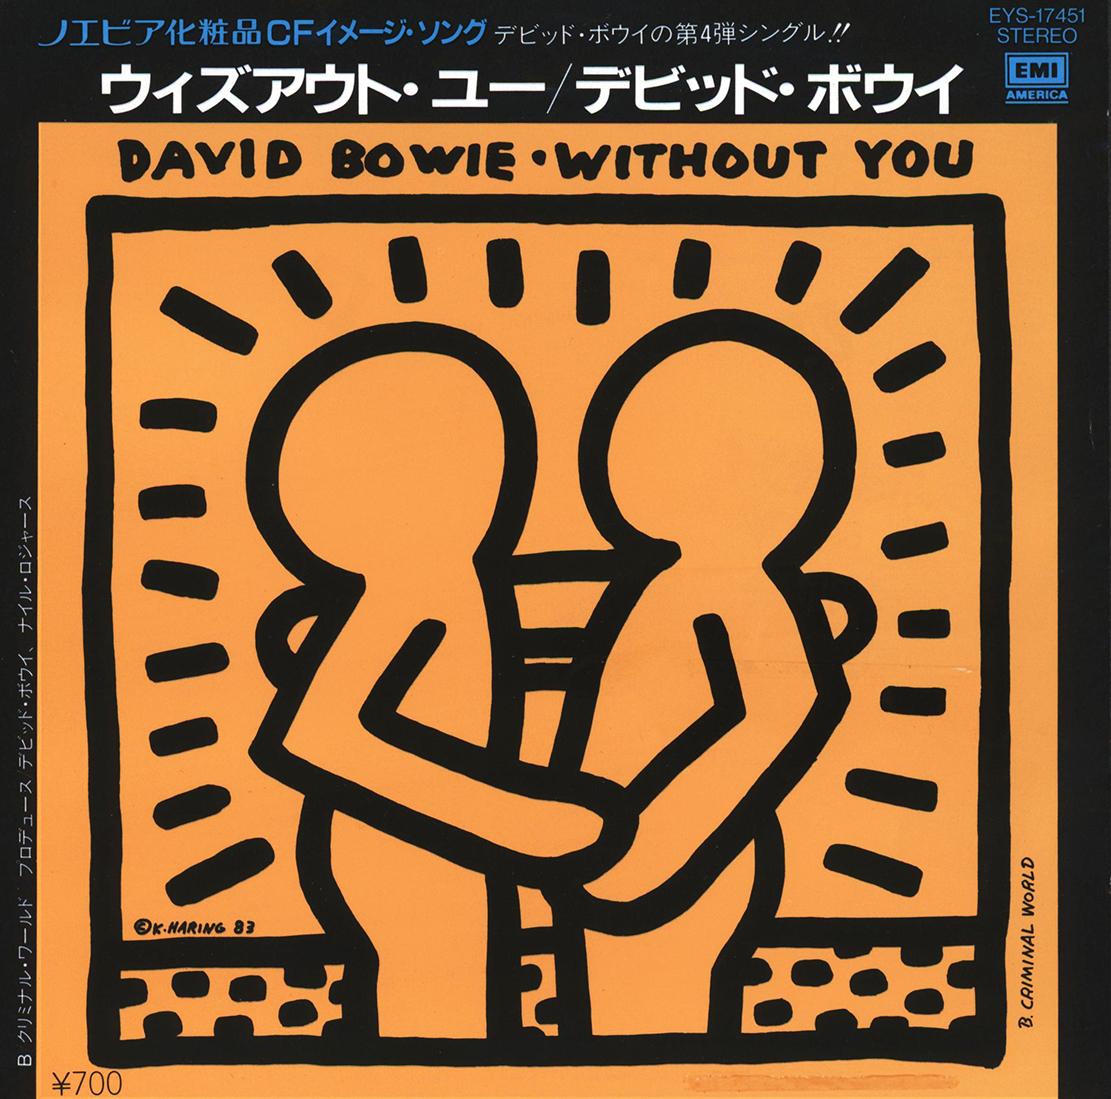 Keith Haring record art 1983 :
David BOWIE "Without You" Une pochette vinyle rare et très recherchée avec une œuvre originale de Keith Haring. Rare Japan 1st Pressing 1983 accompagné de son album original :

Moyen d'expression : Lithographie